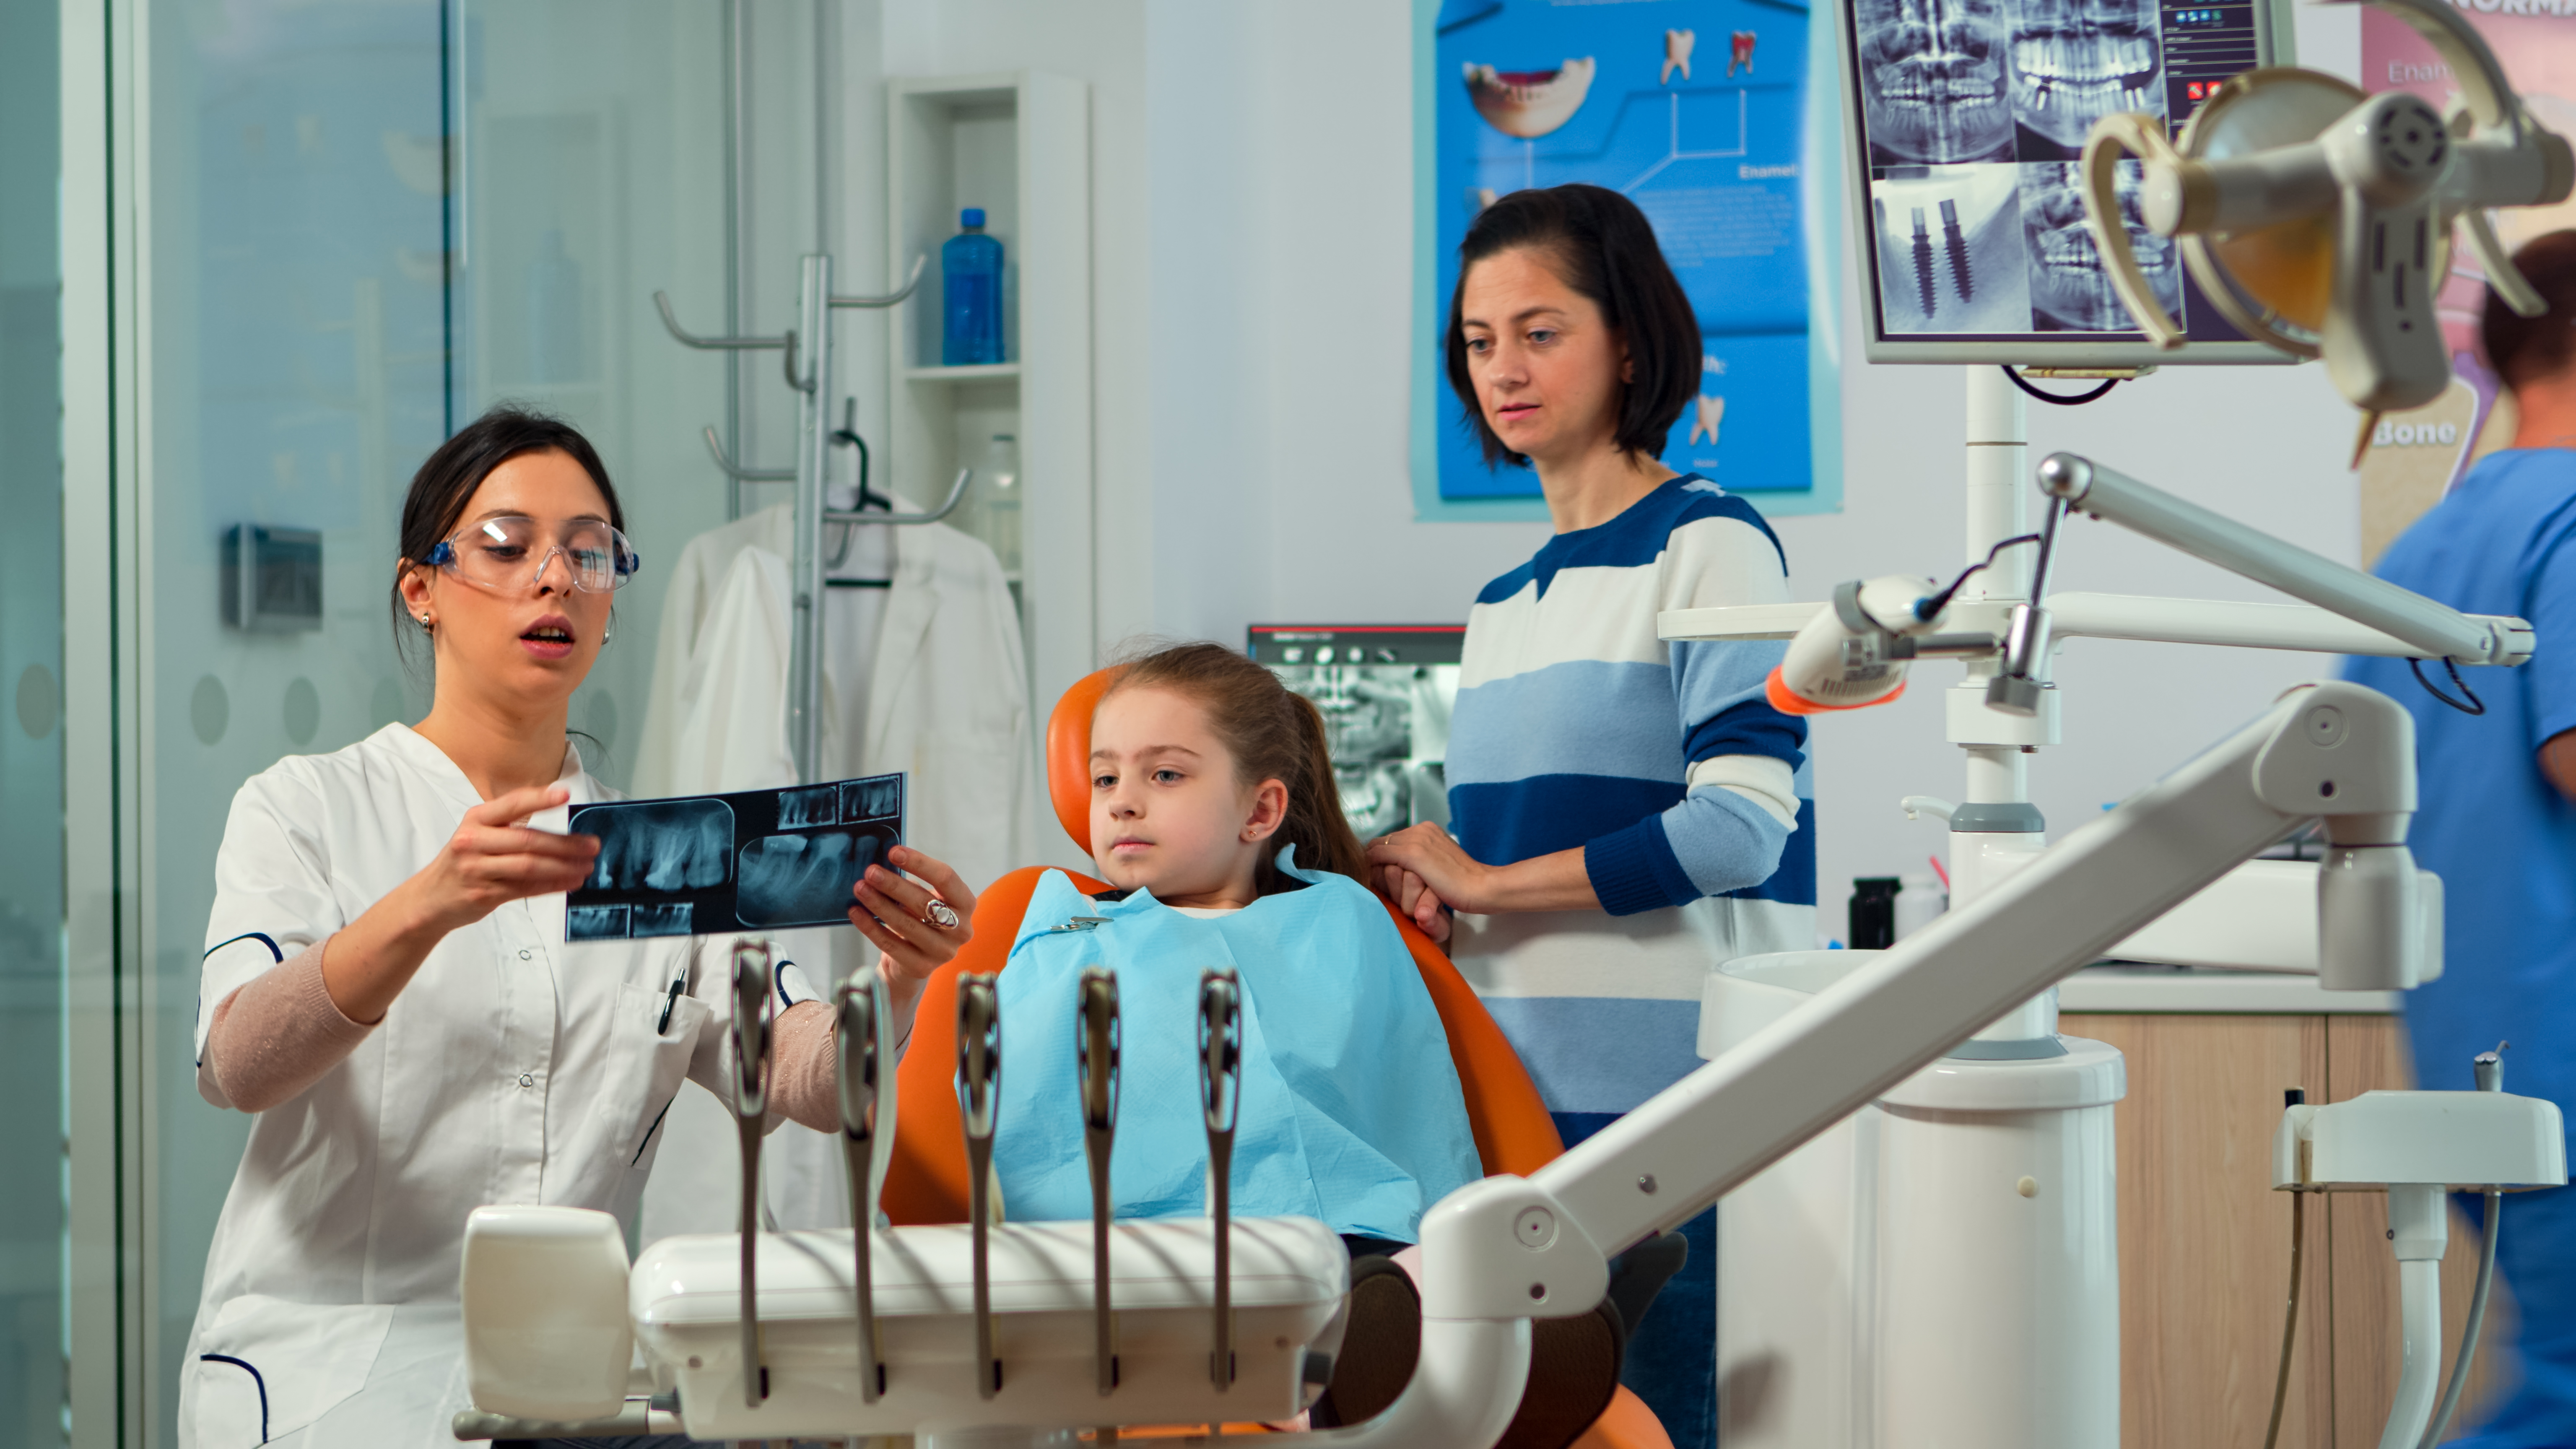 Aparatul dentar – o solutie pentru copiii mici?